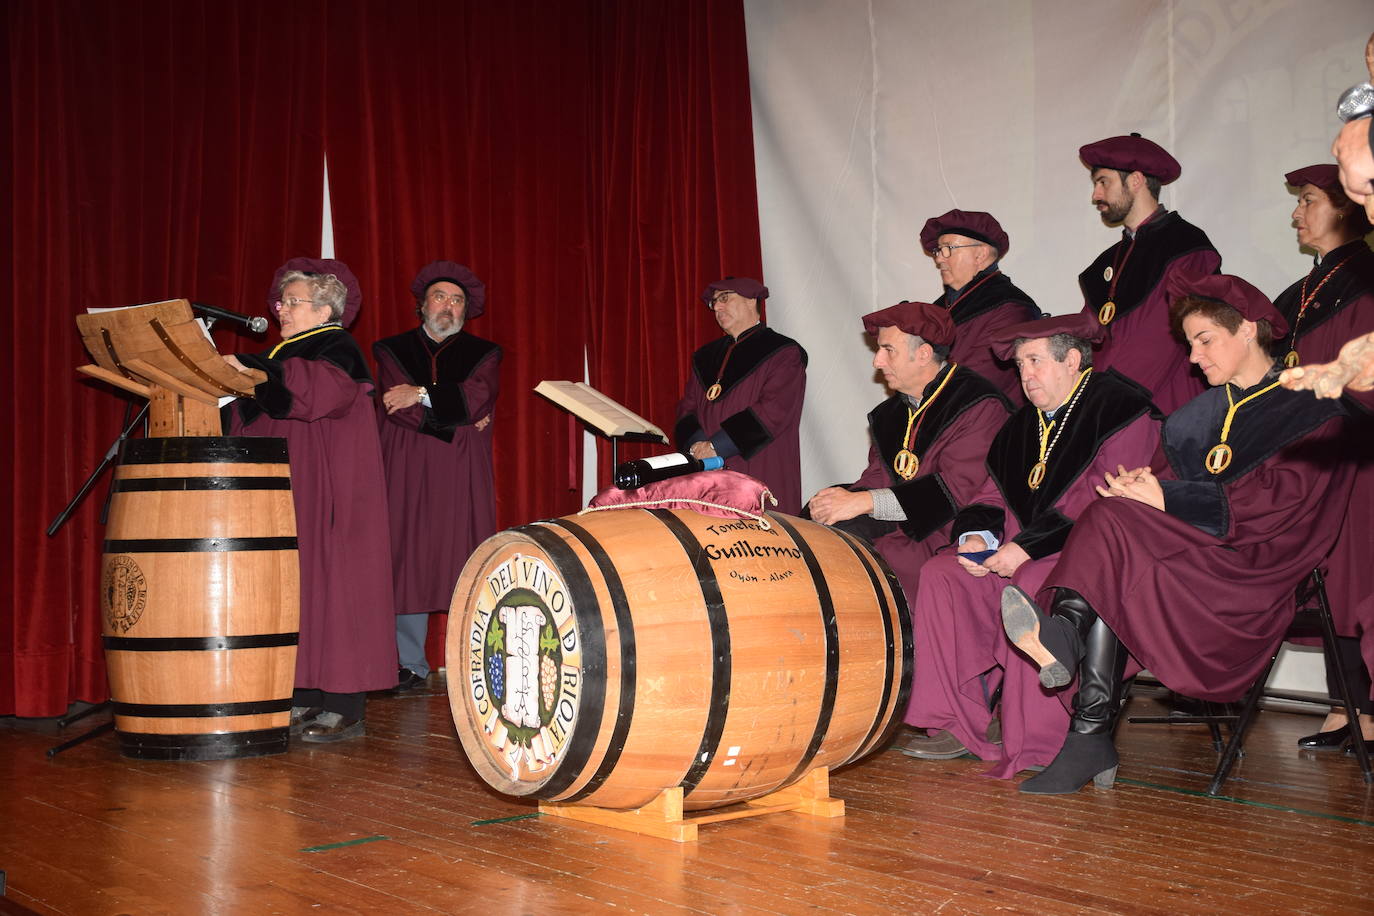 Fotos: La celebración de la Cofradía del Vino, en imágenes